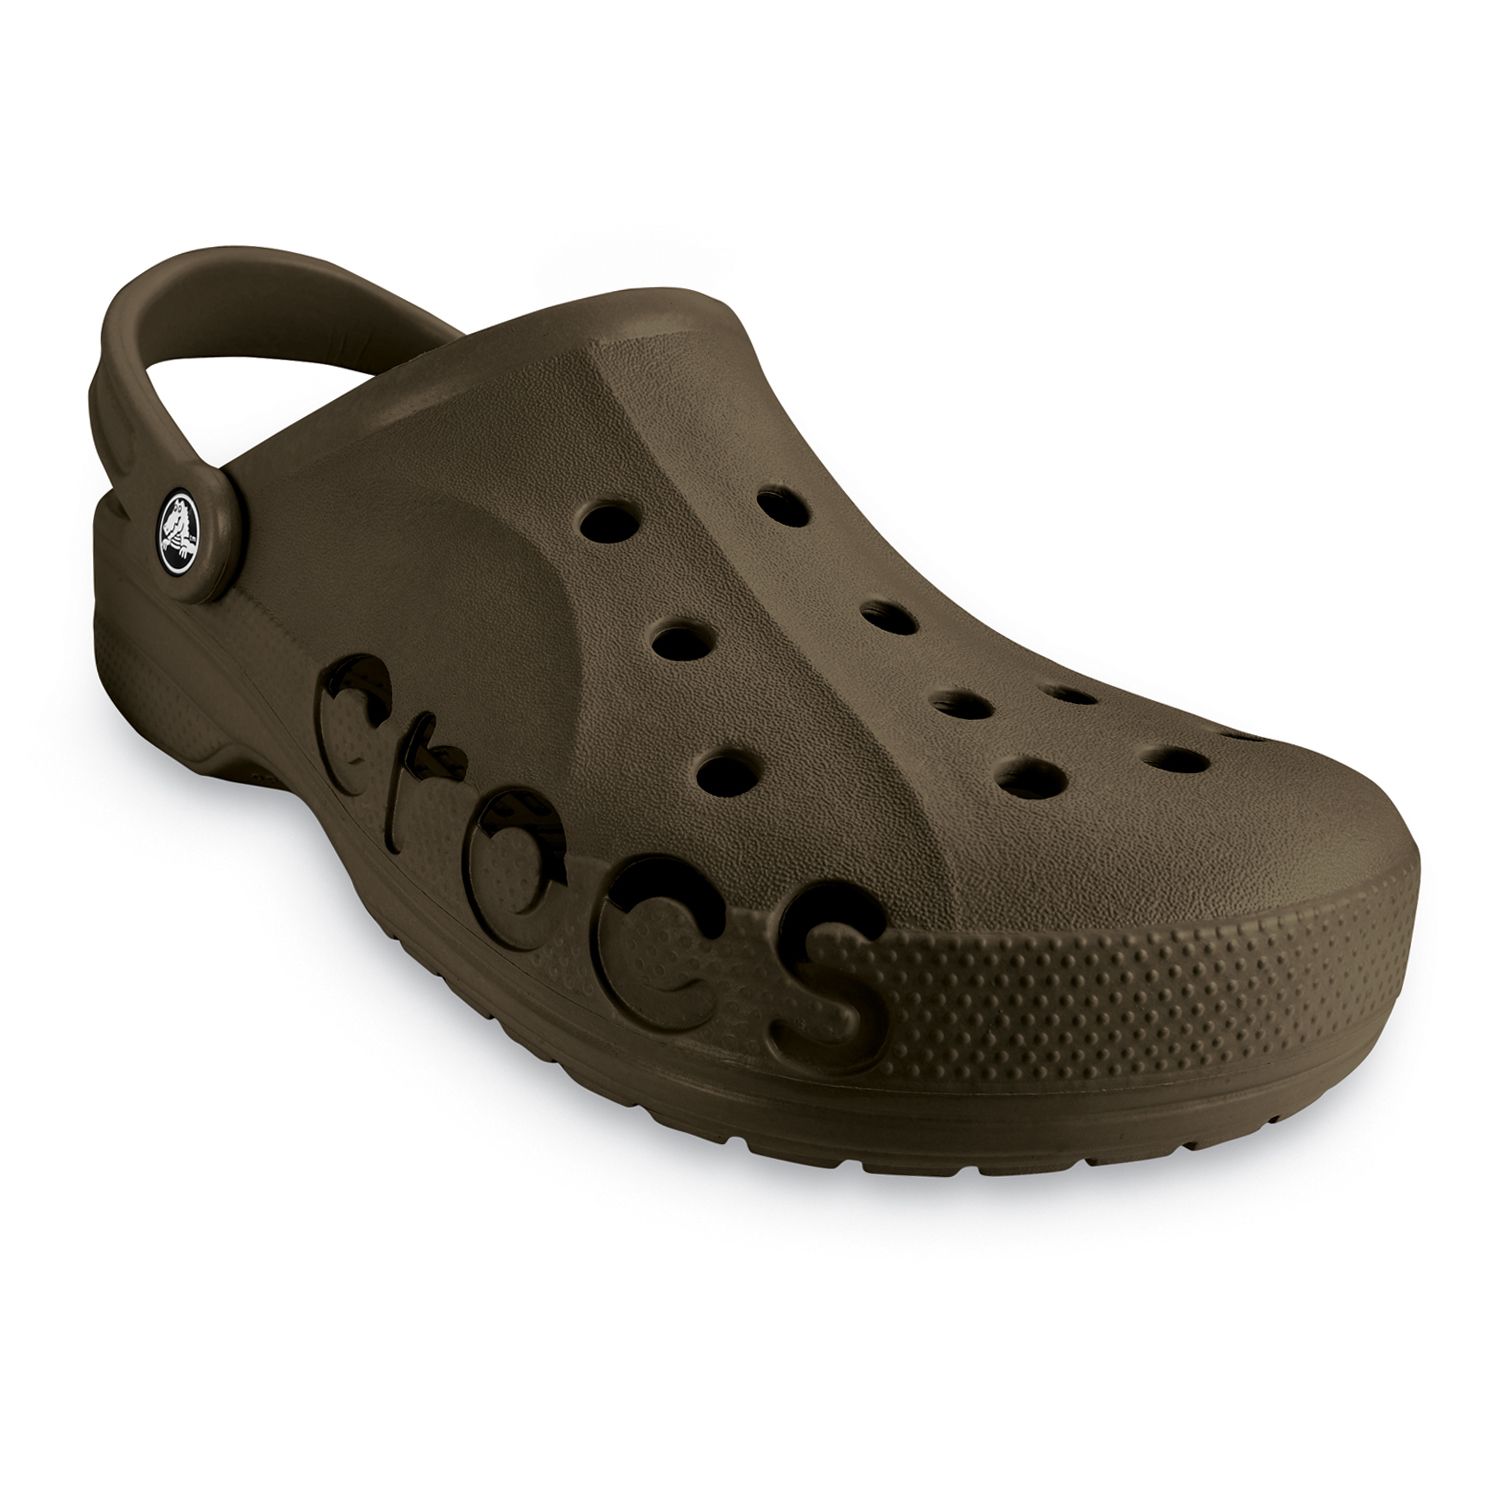 mens croc style shoes